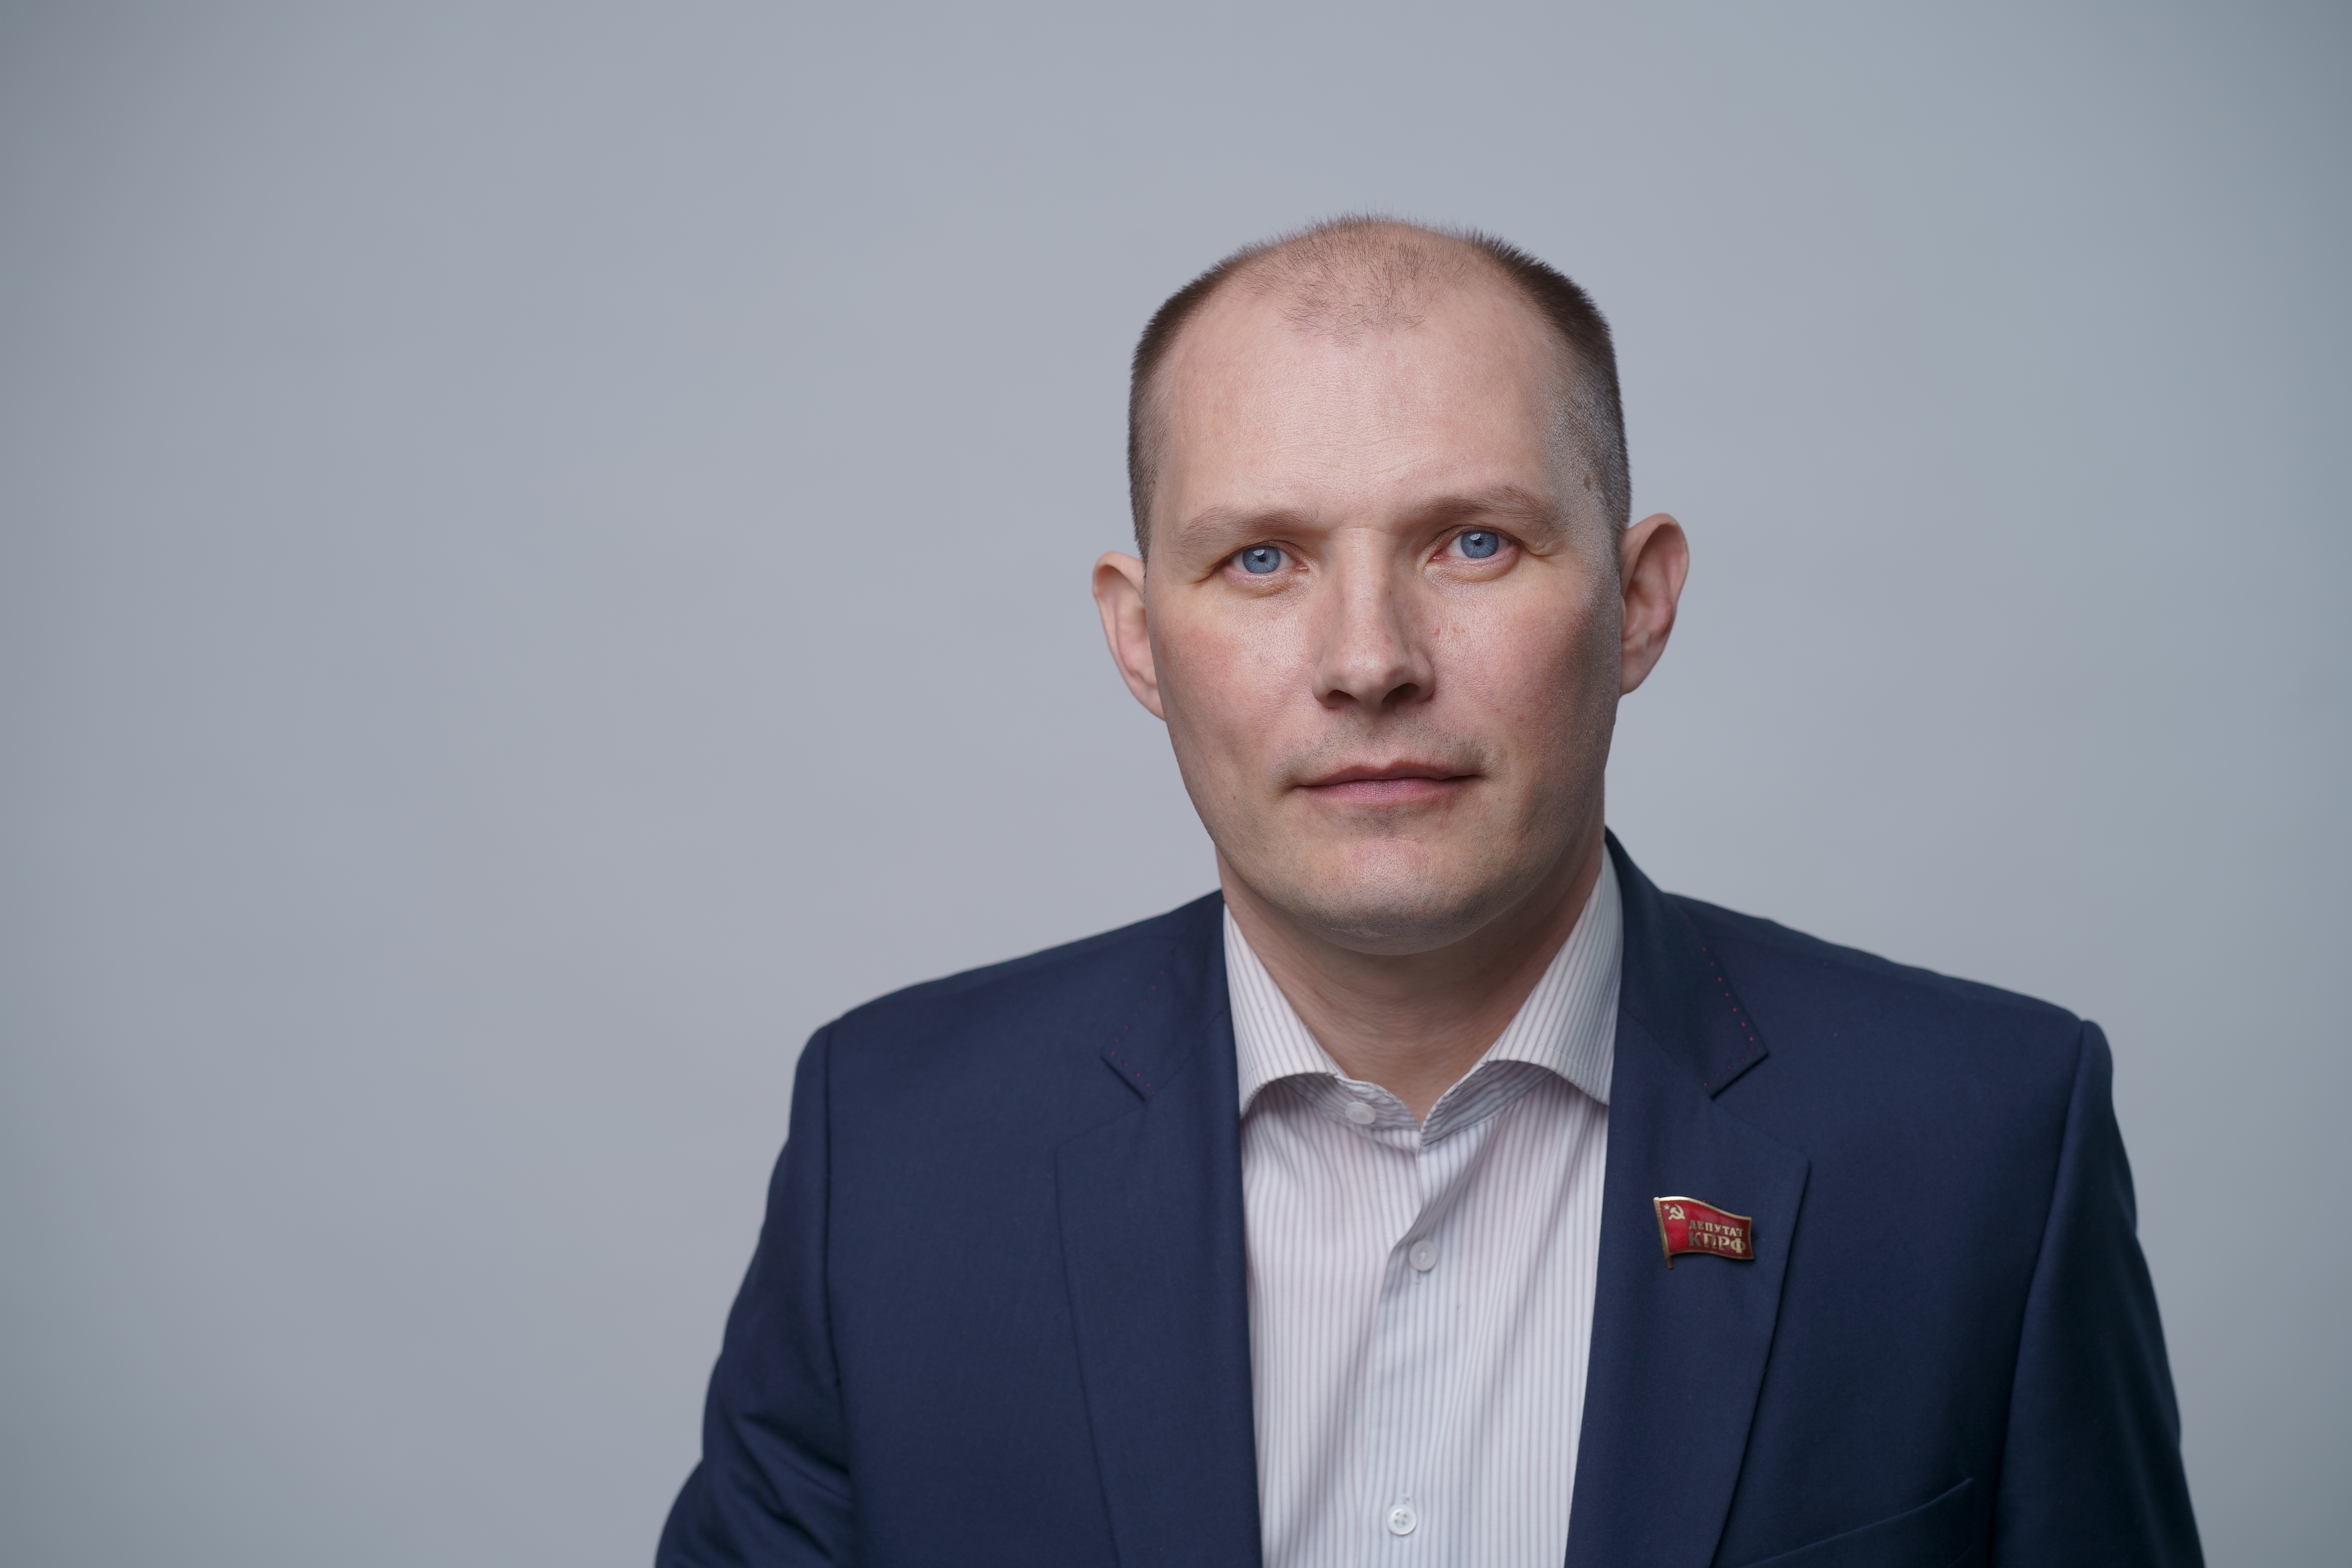 КПРФ выдвинула Евгения Ульянова кандидатом на выборы в Госдуму по Карелии